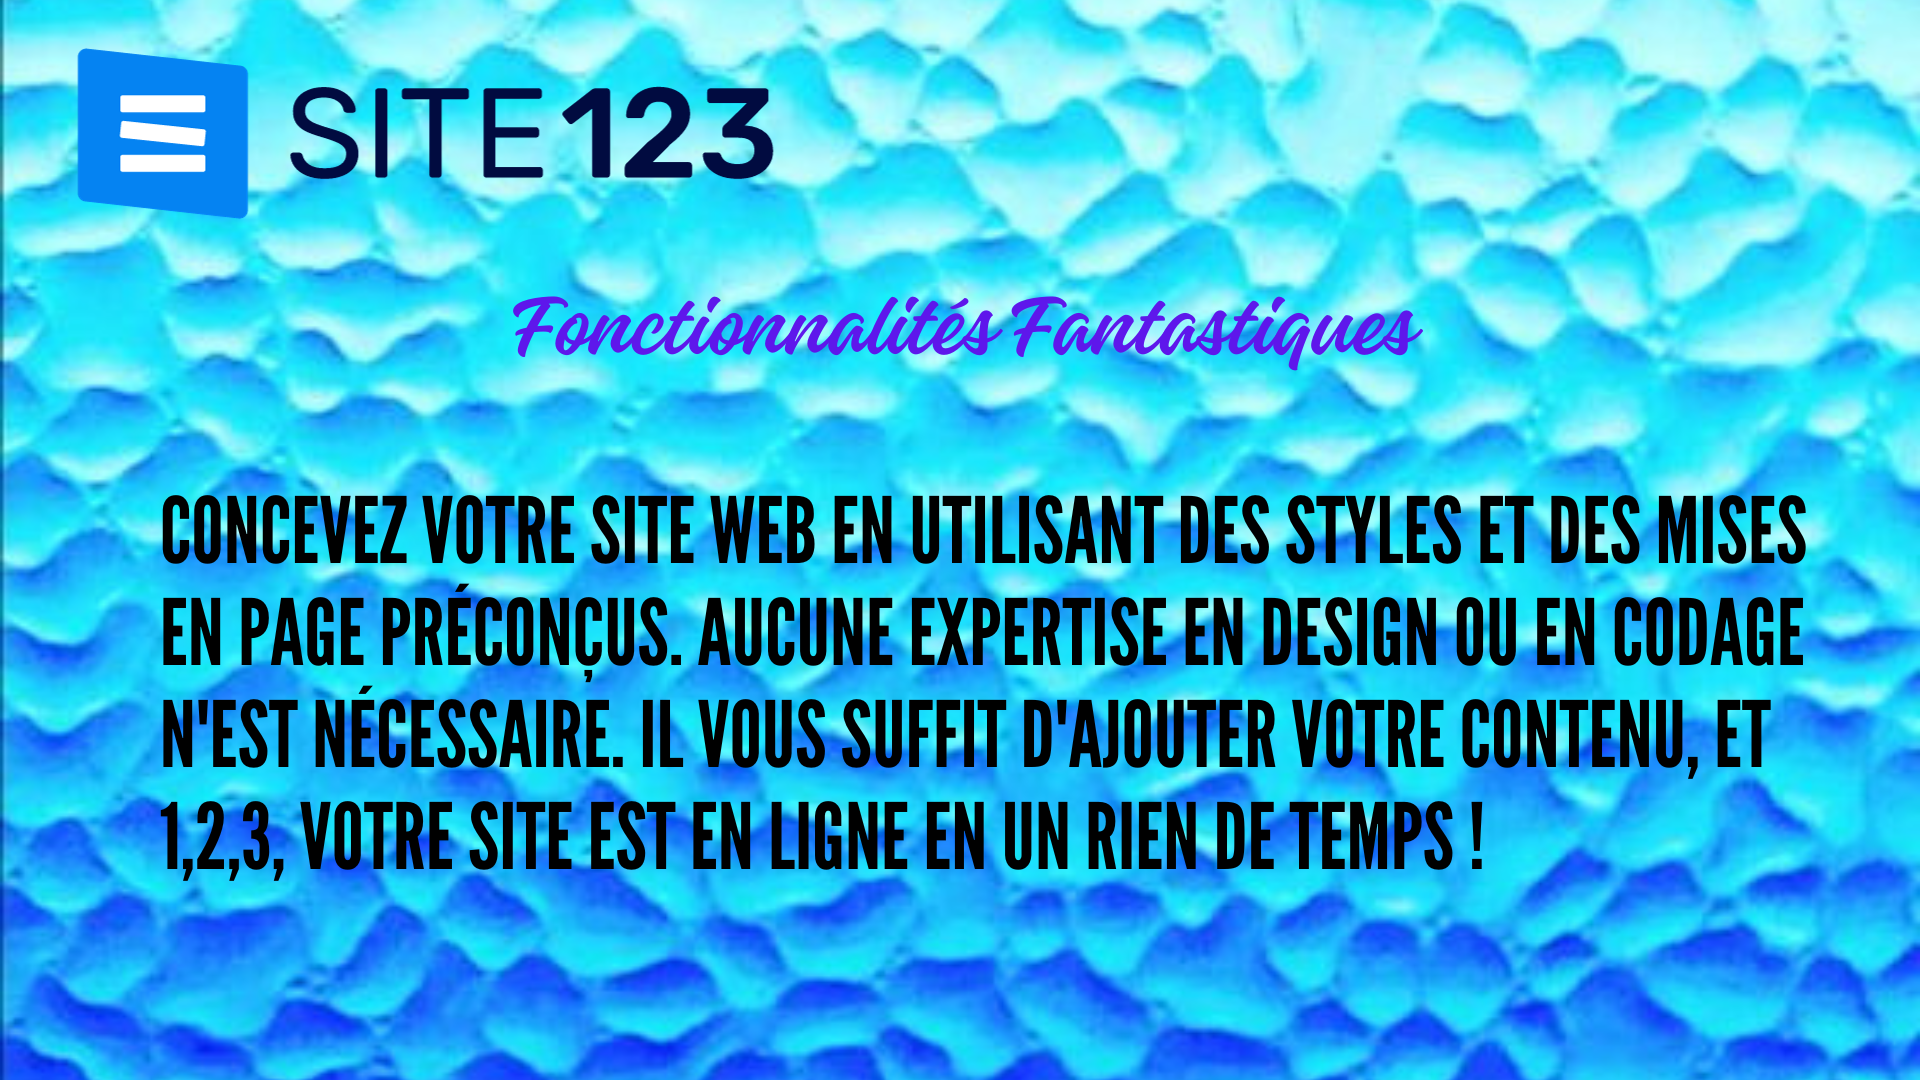 Pourquoi choisir SITE123 pour créer son site web en tant que débutant ?